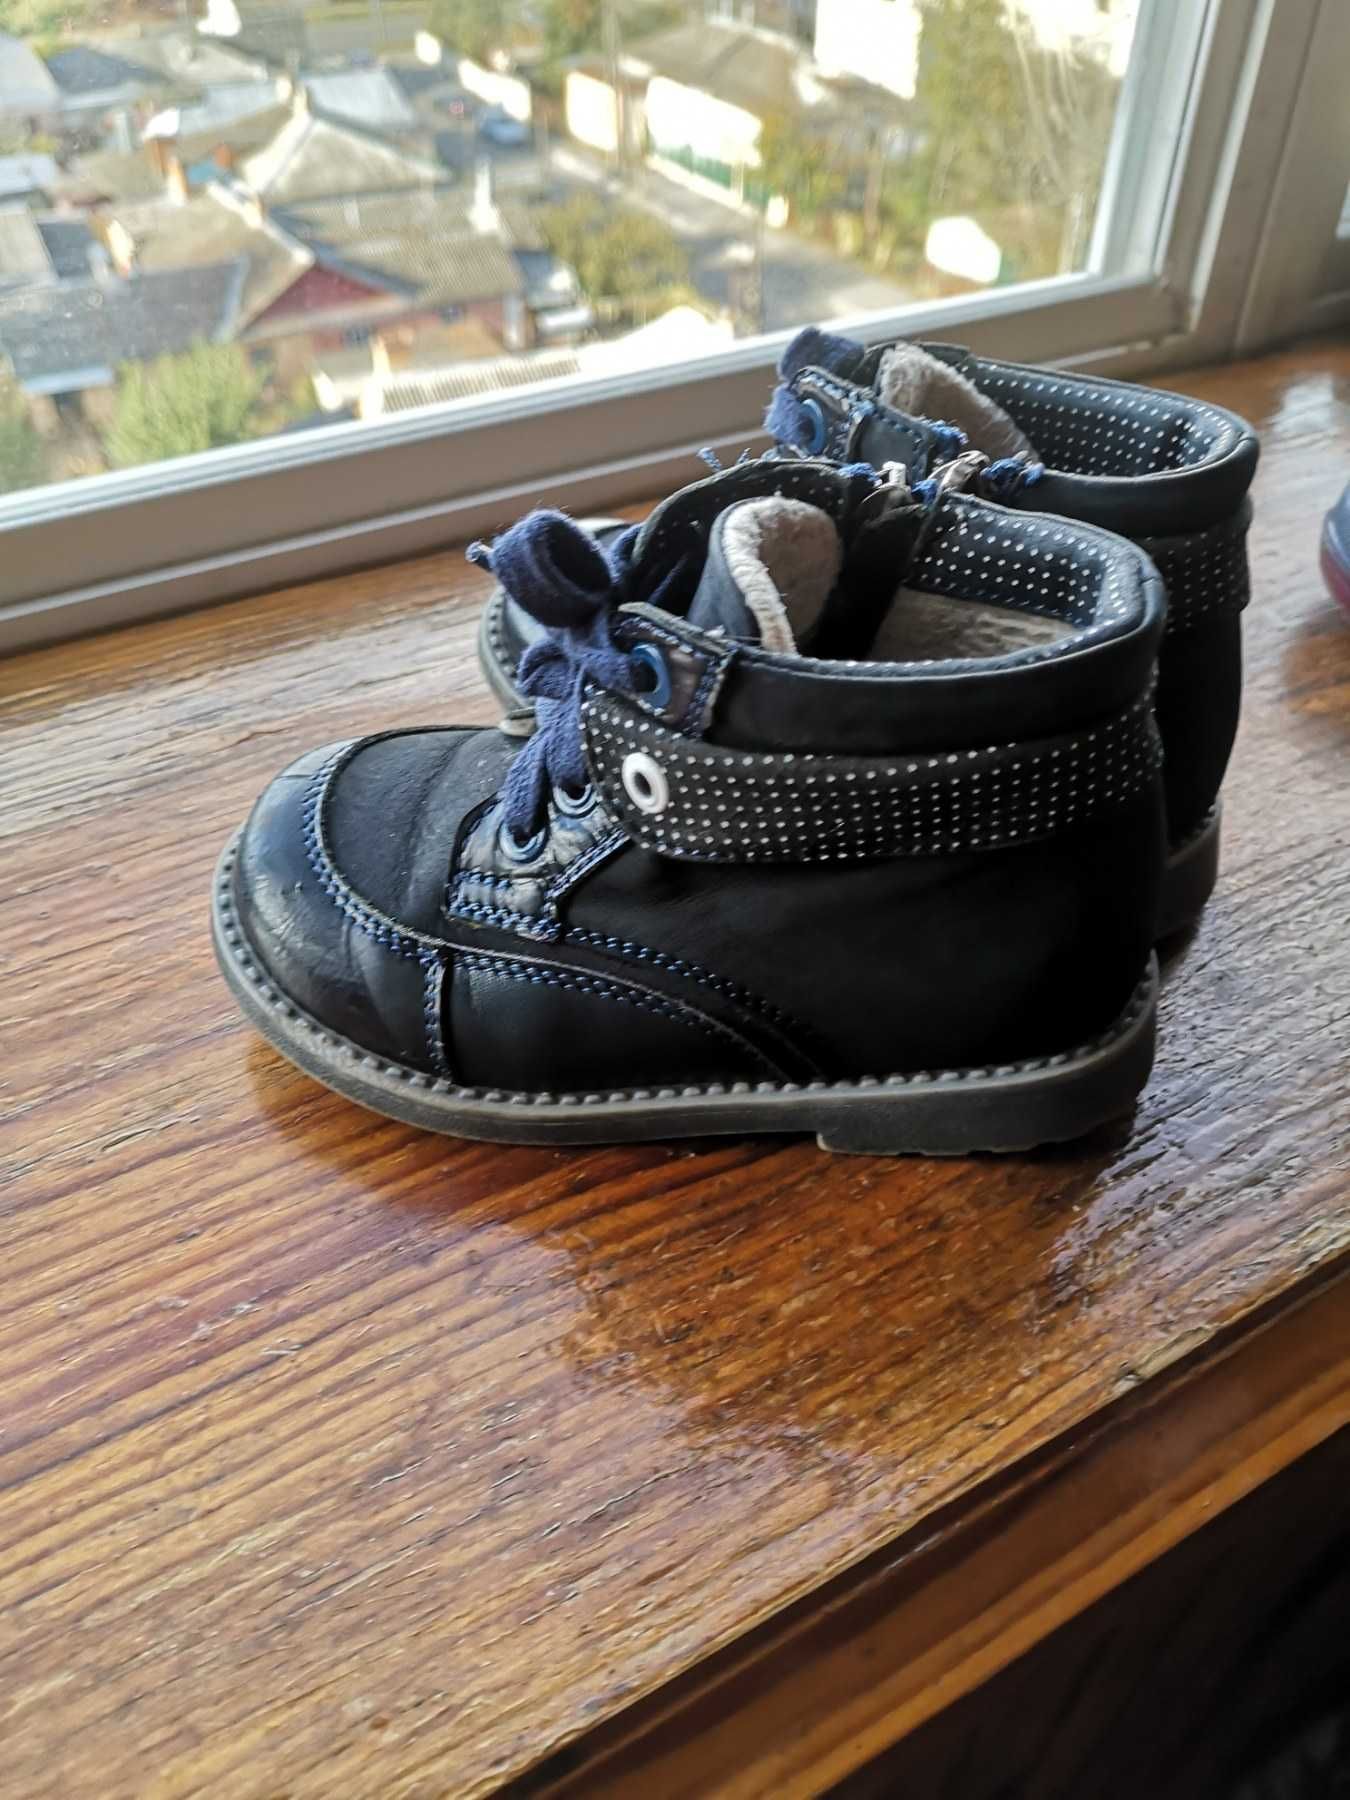 Осінні чоботи з натуральної шкіри, розмір 24 см, весняне дитяче взуття